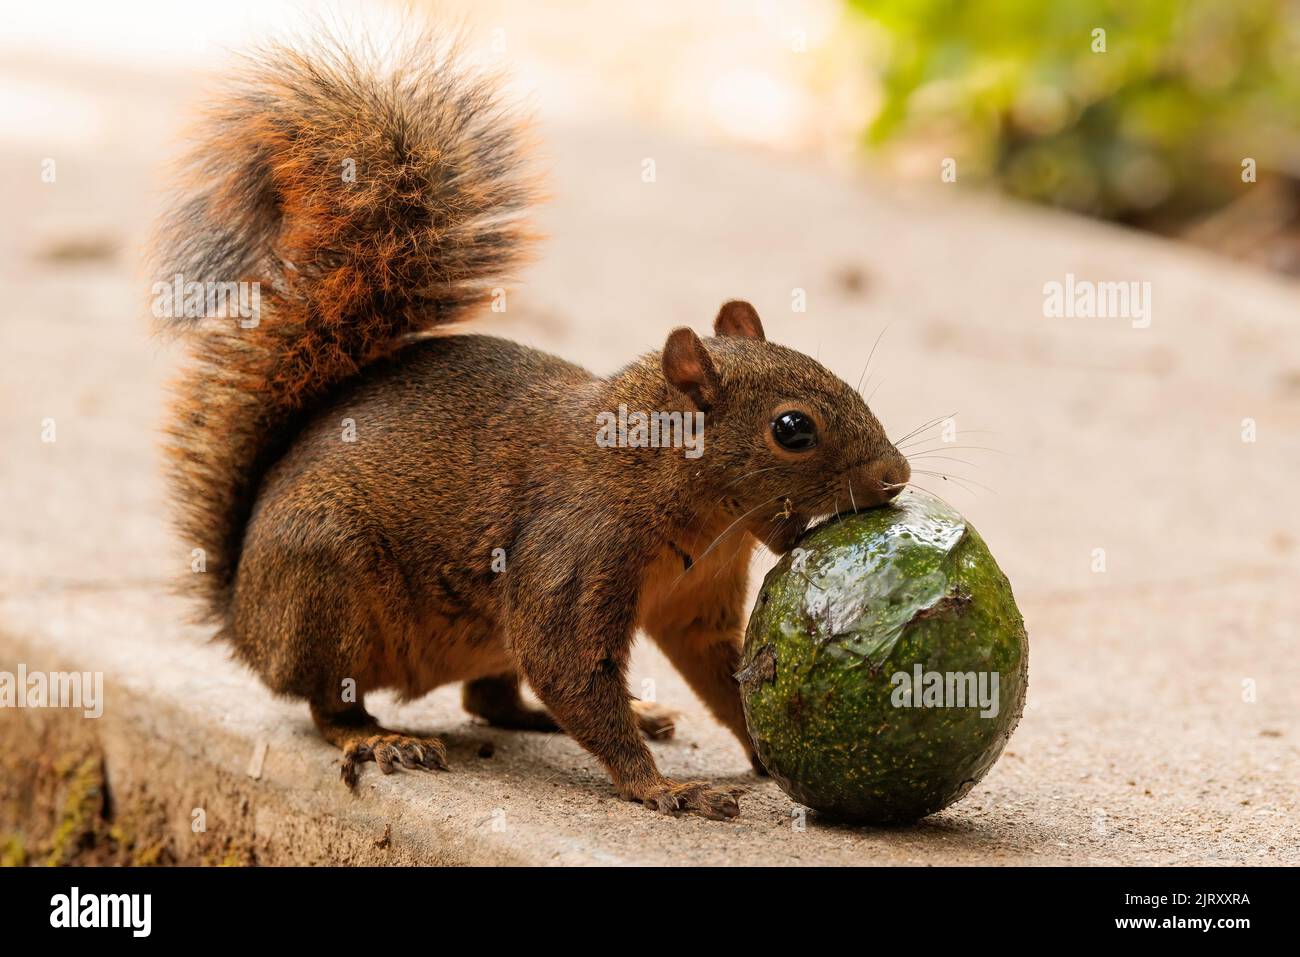 Grey squirrel (Sciurus carolinensis) eating a green avocado on a concrete ground Stock Photo